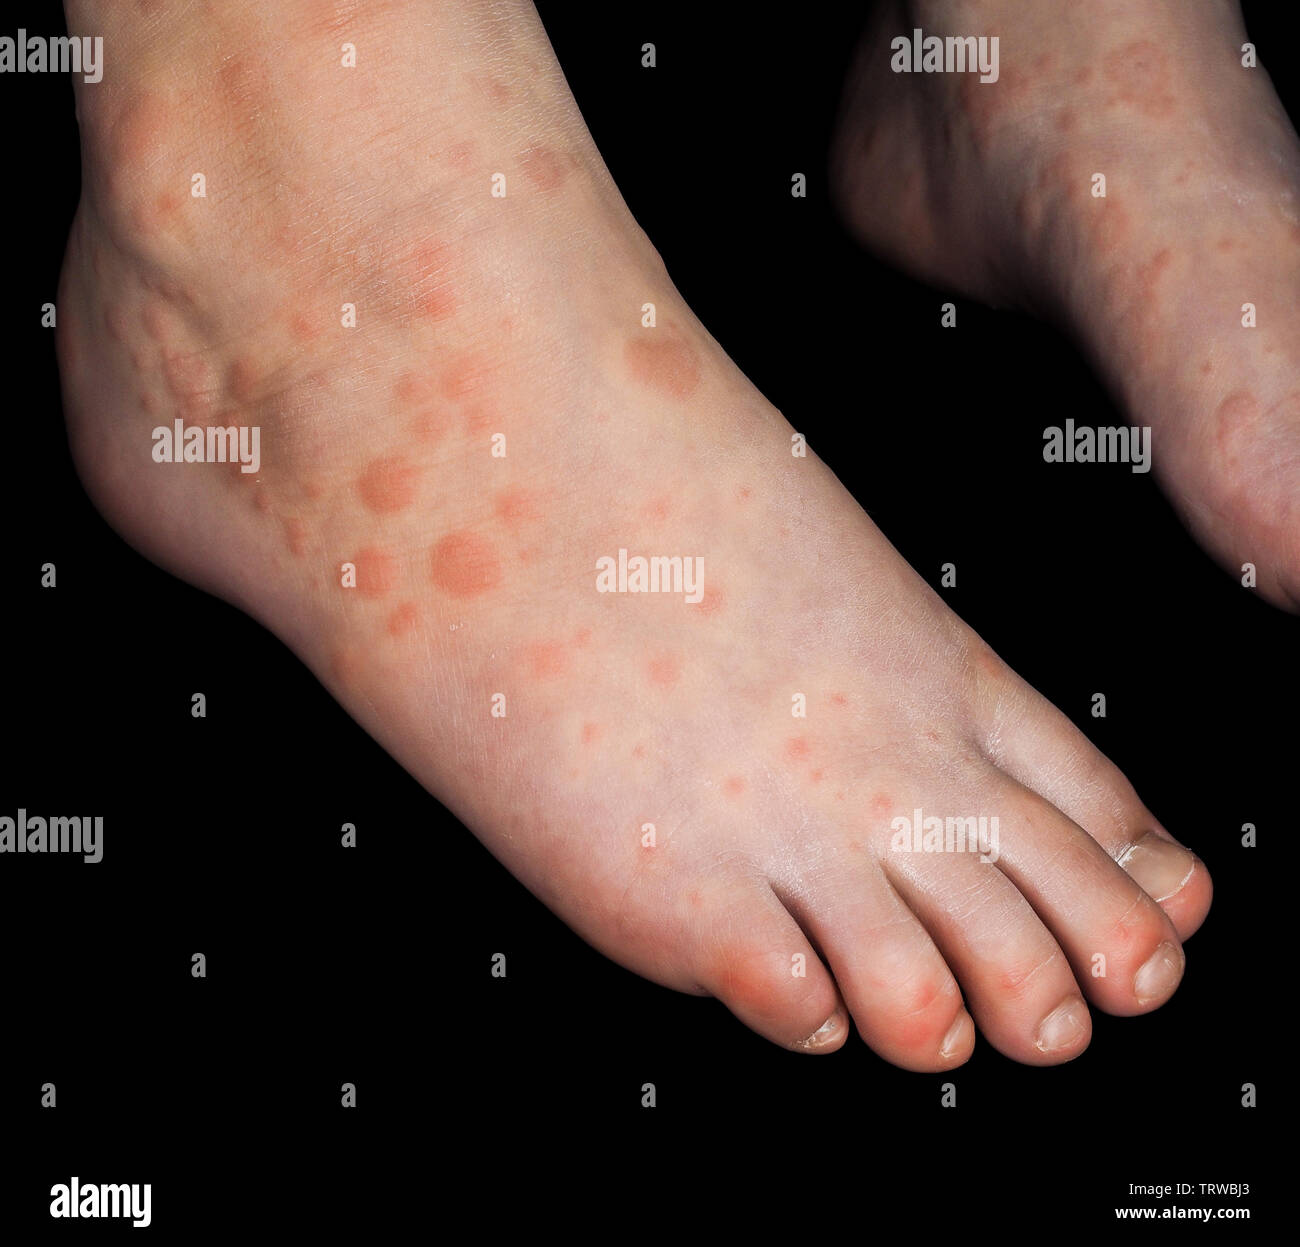 Kind mit roten Ausschlag von Coxsackievirus, an beiden Füßen, auf Schwarz isoliert Stockfoto